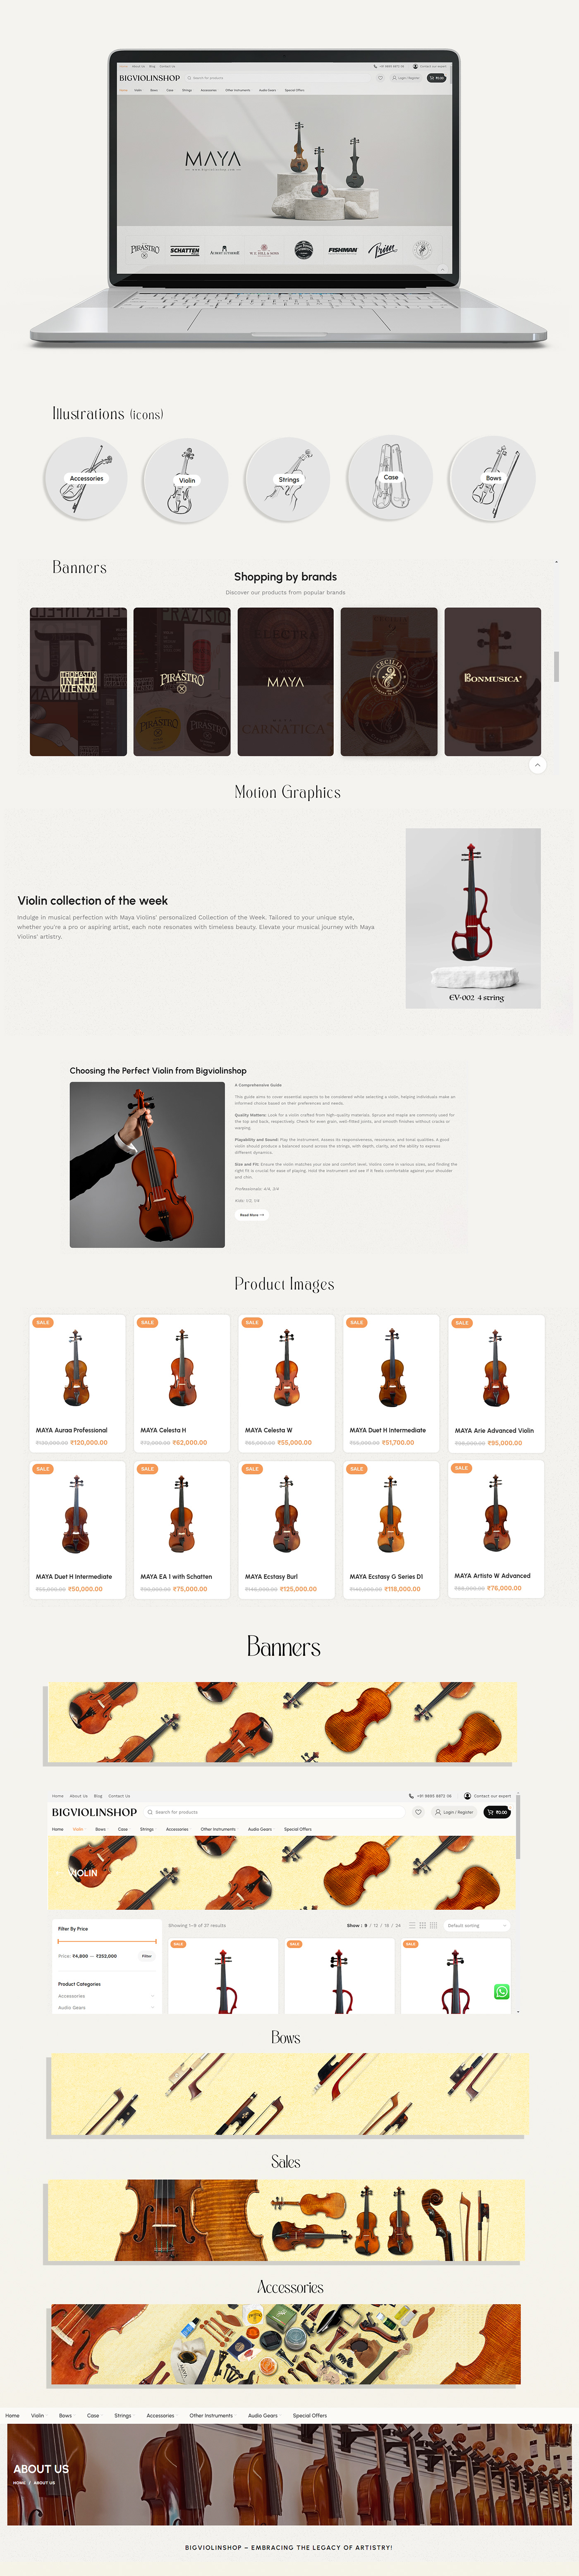 Website Design Advertising  Graphic Designer branding  marketing   Webstore Design  Violin ILLUSTRATION  violin shop webbannerdesign